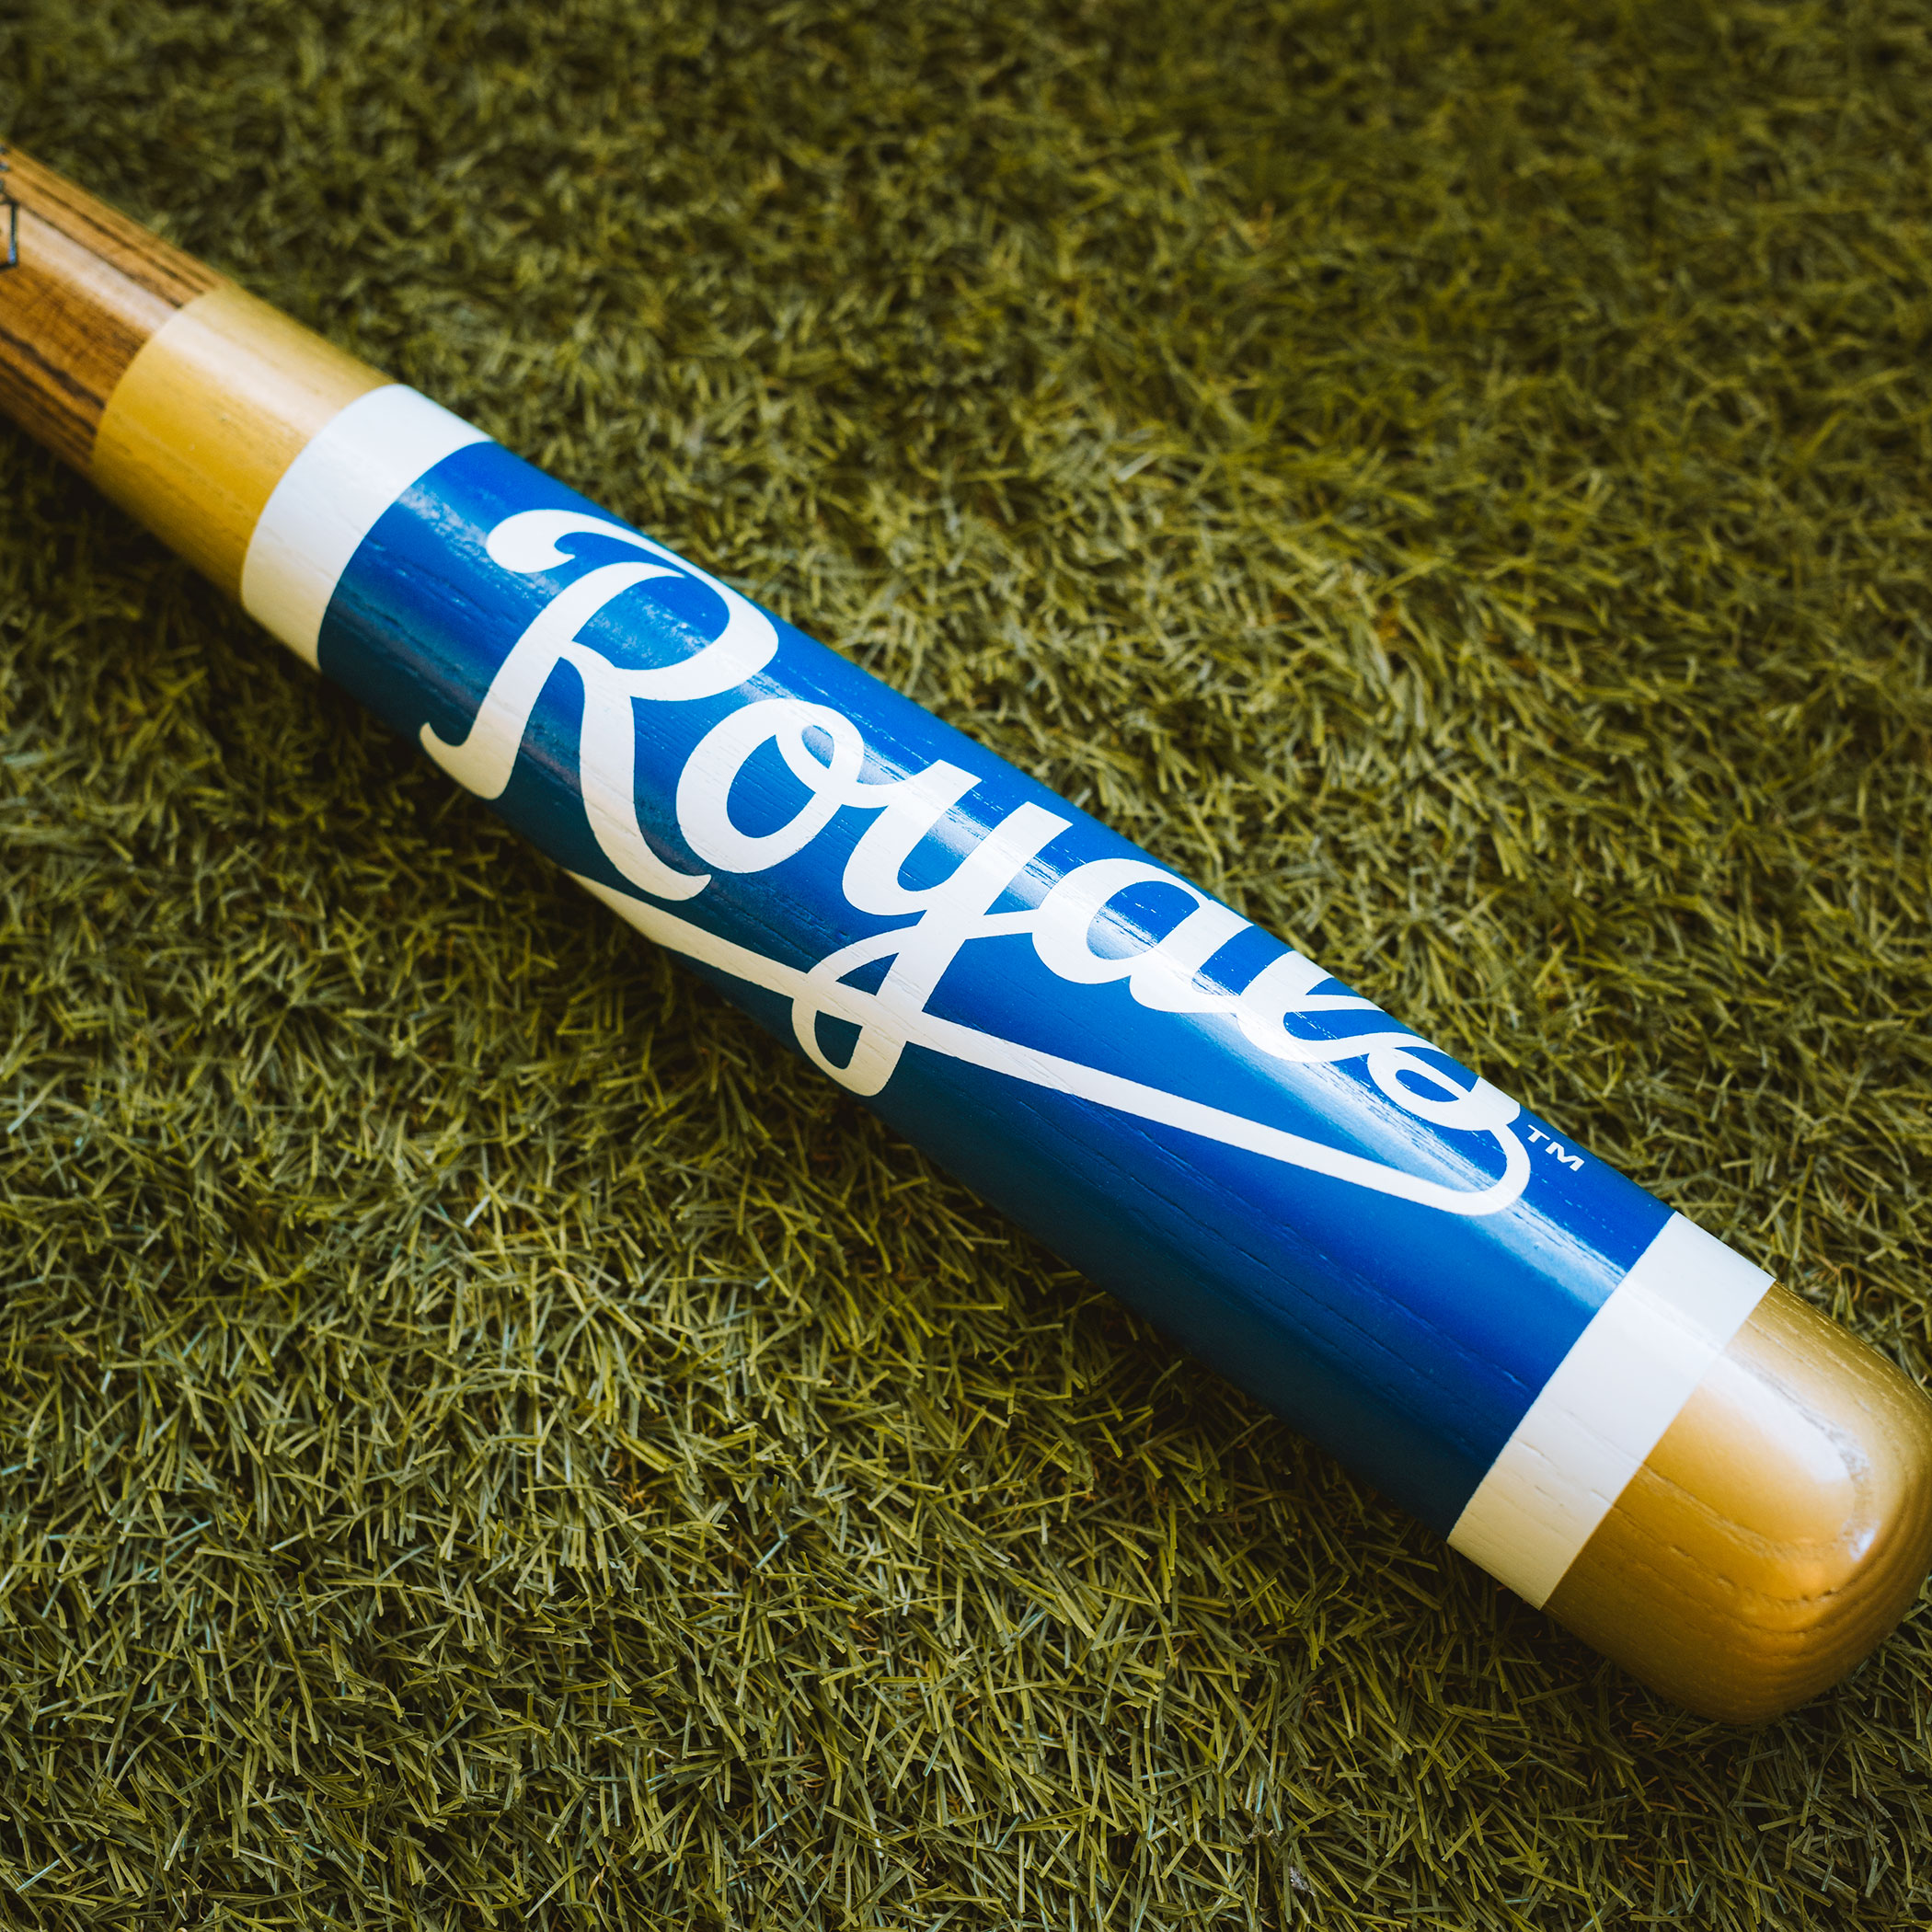 Kansas City Royals - Official MLB Licensed Baseball Bat Mugs & Gifts